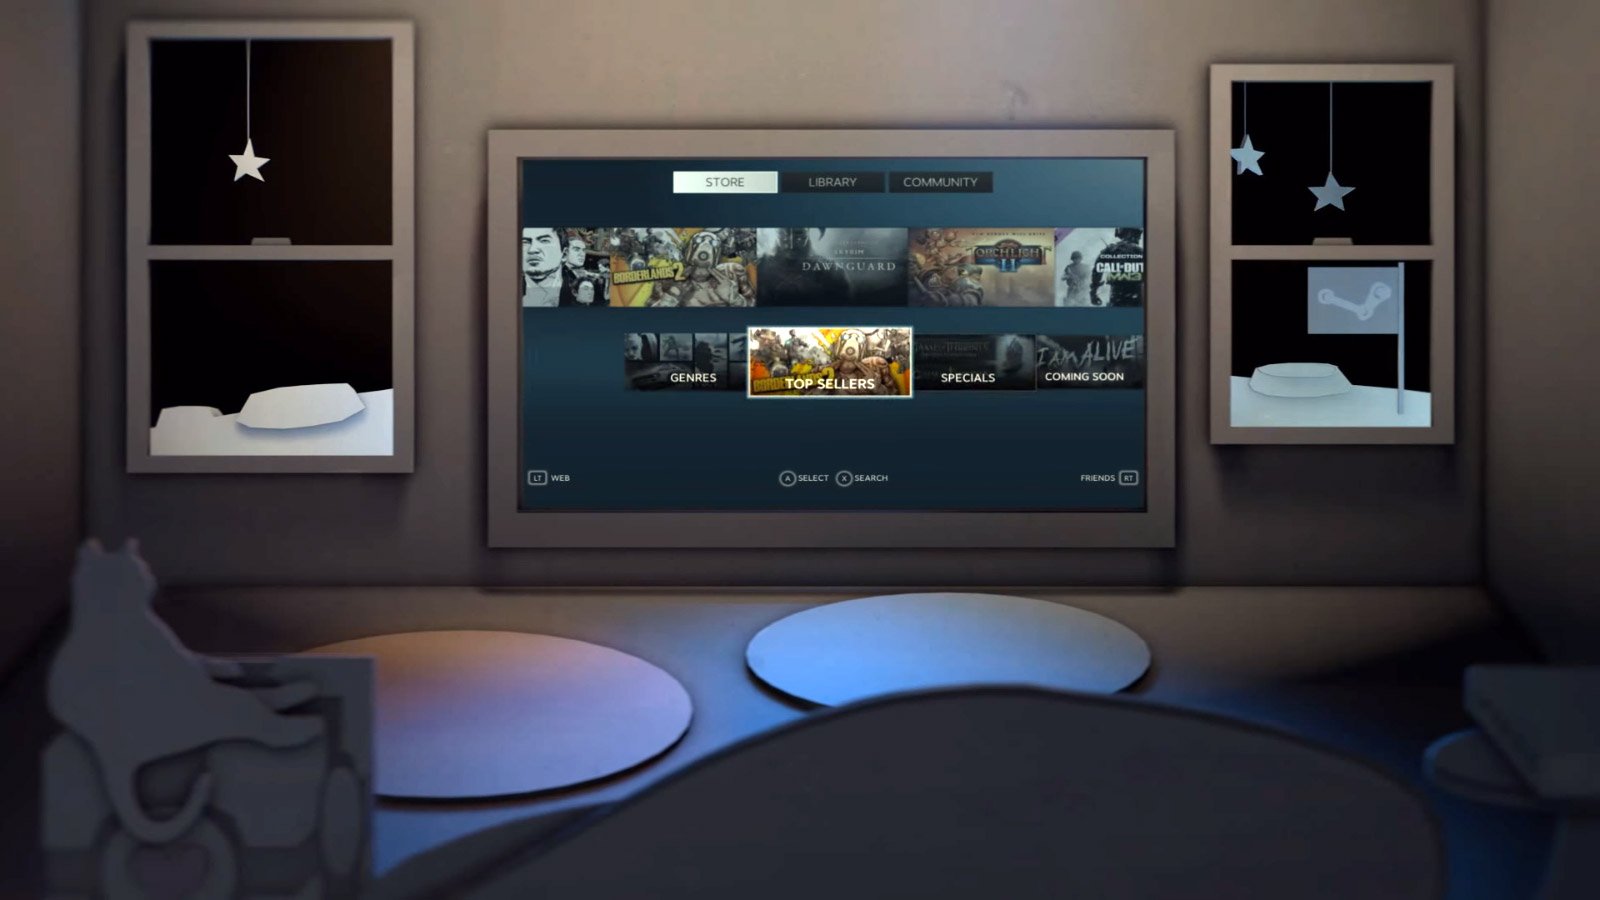 SteamVR Home: свежий интерфейс виртуальной реальности для Steam